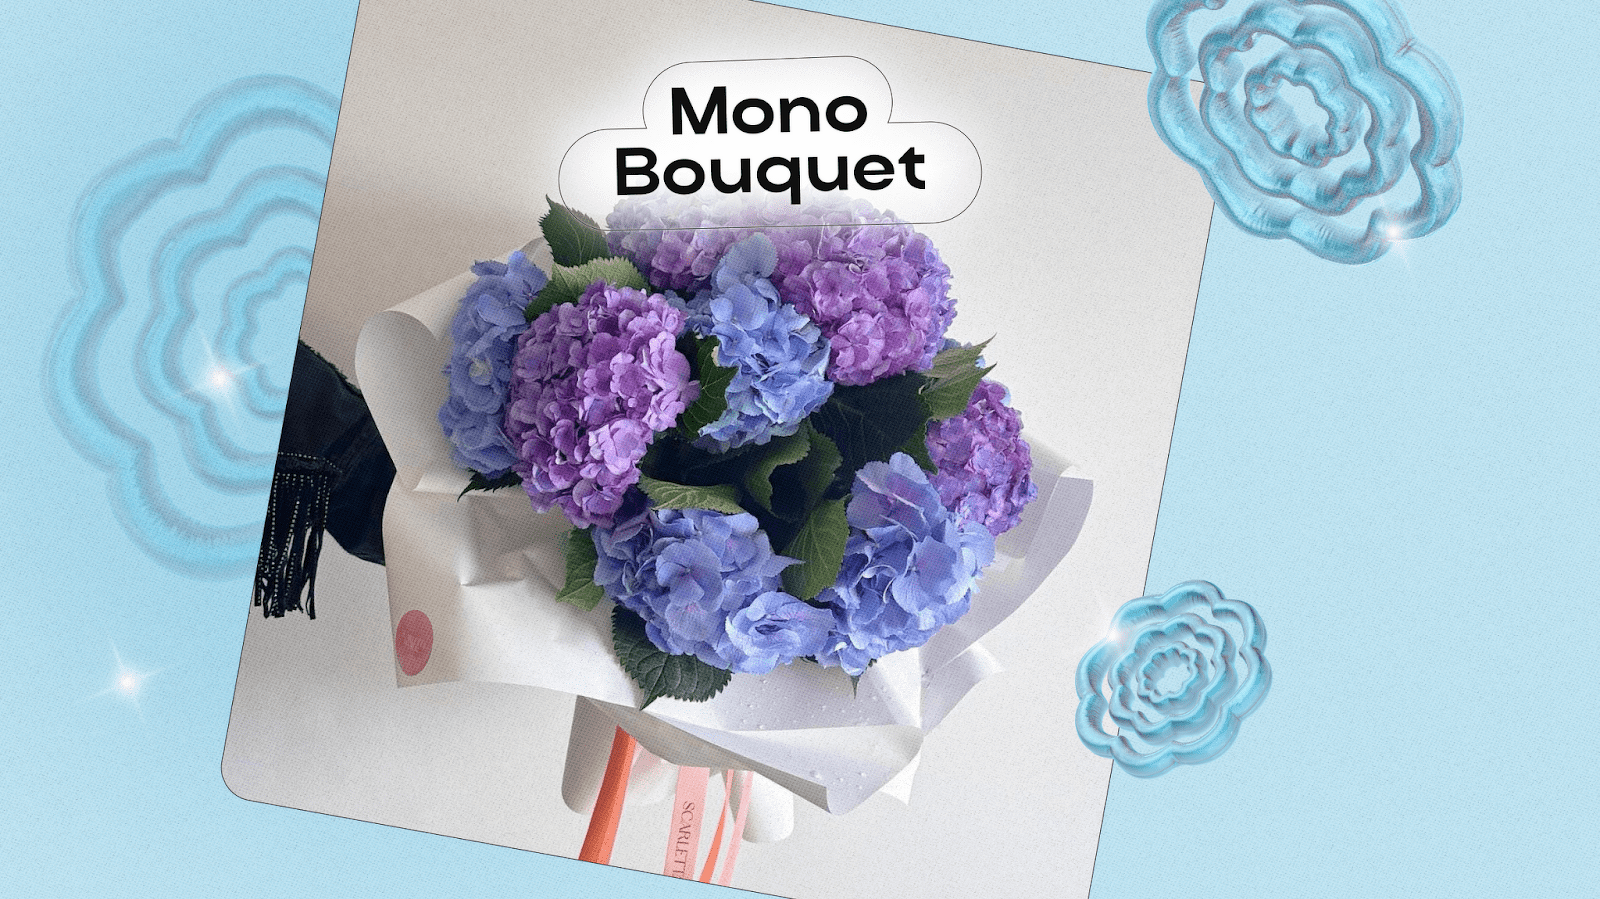 Mono Bouquet